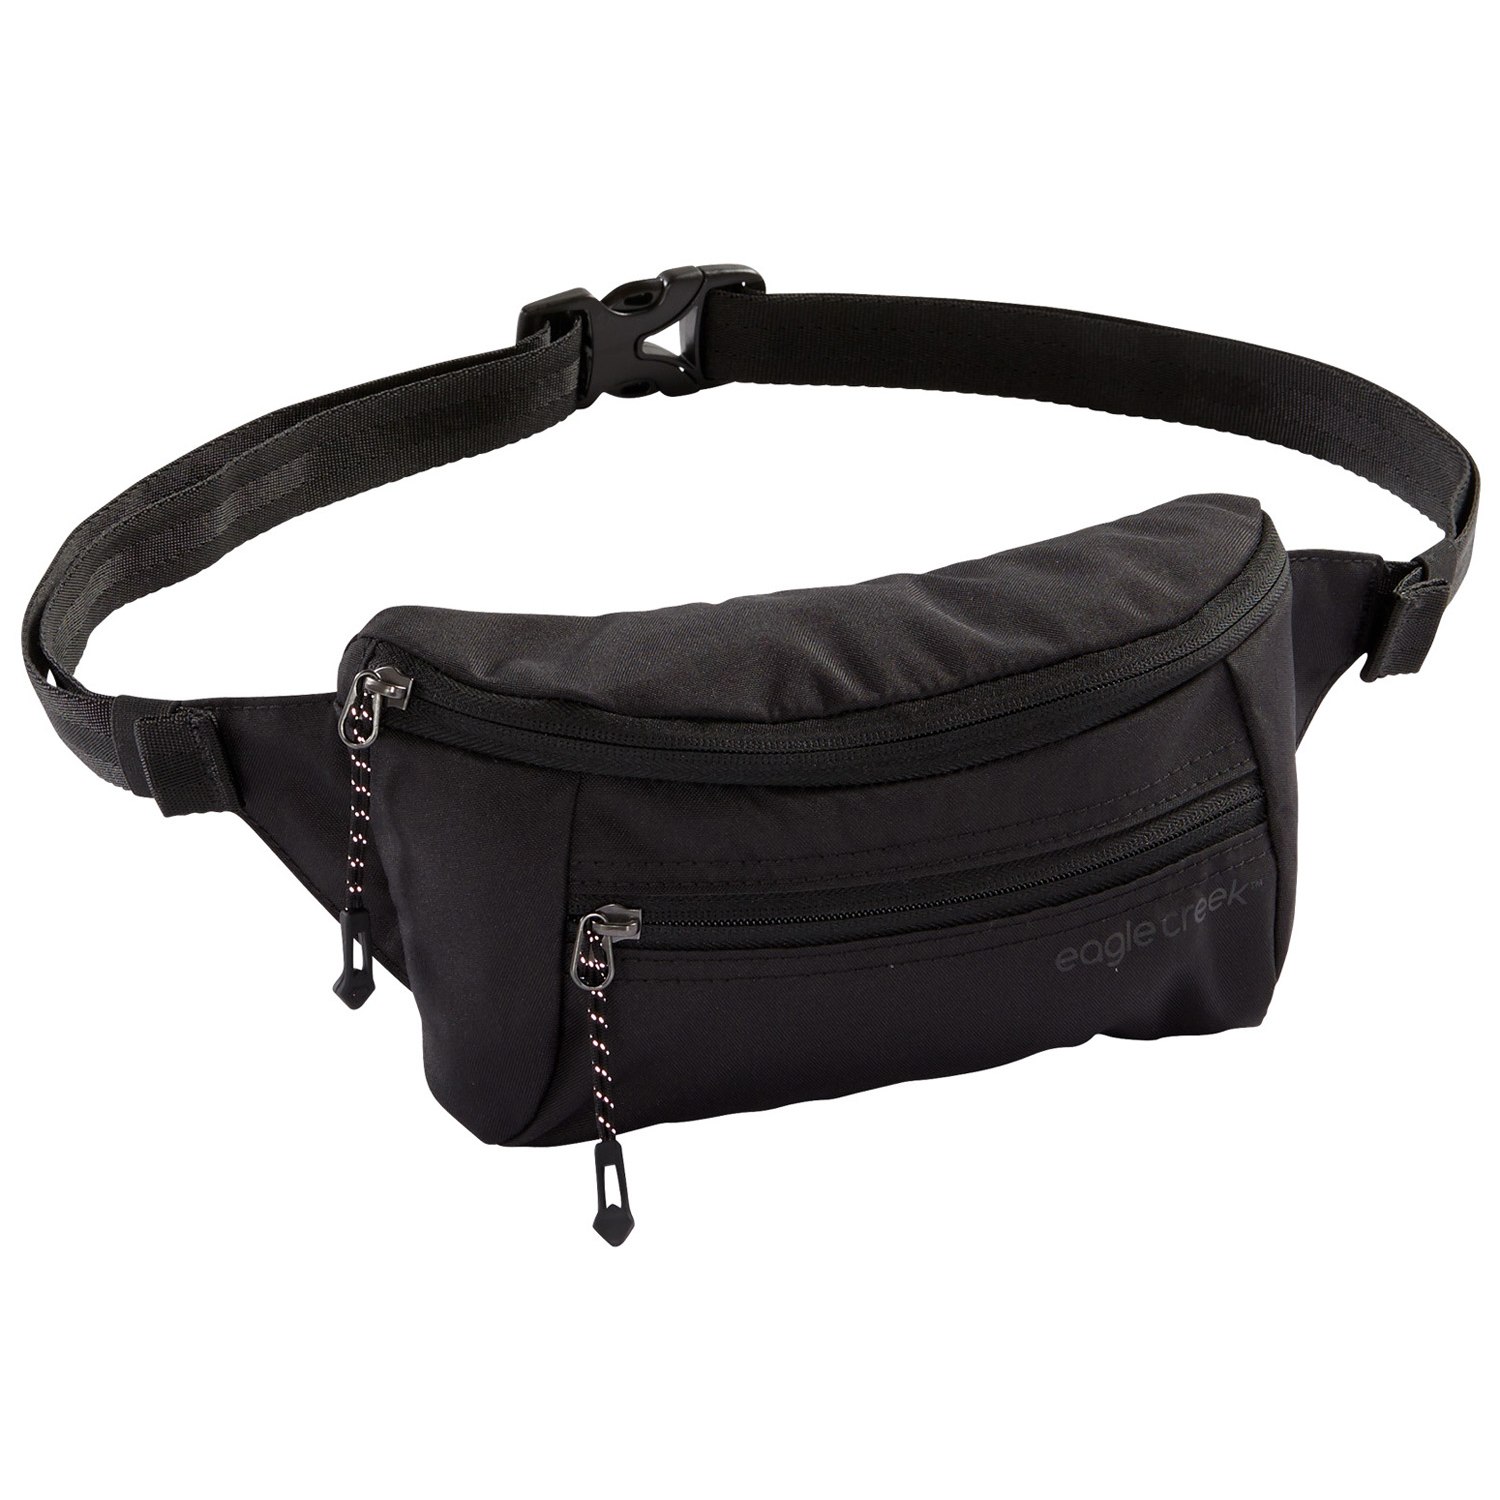 Produktbild von Eagle Creek Stash Cross Body Bag Hüfttasche - schwarz